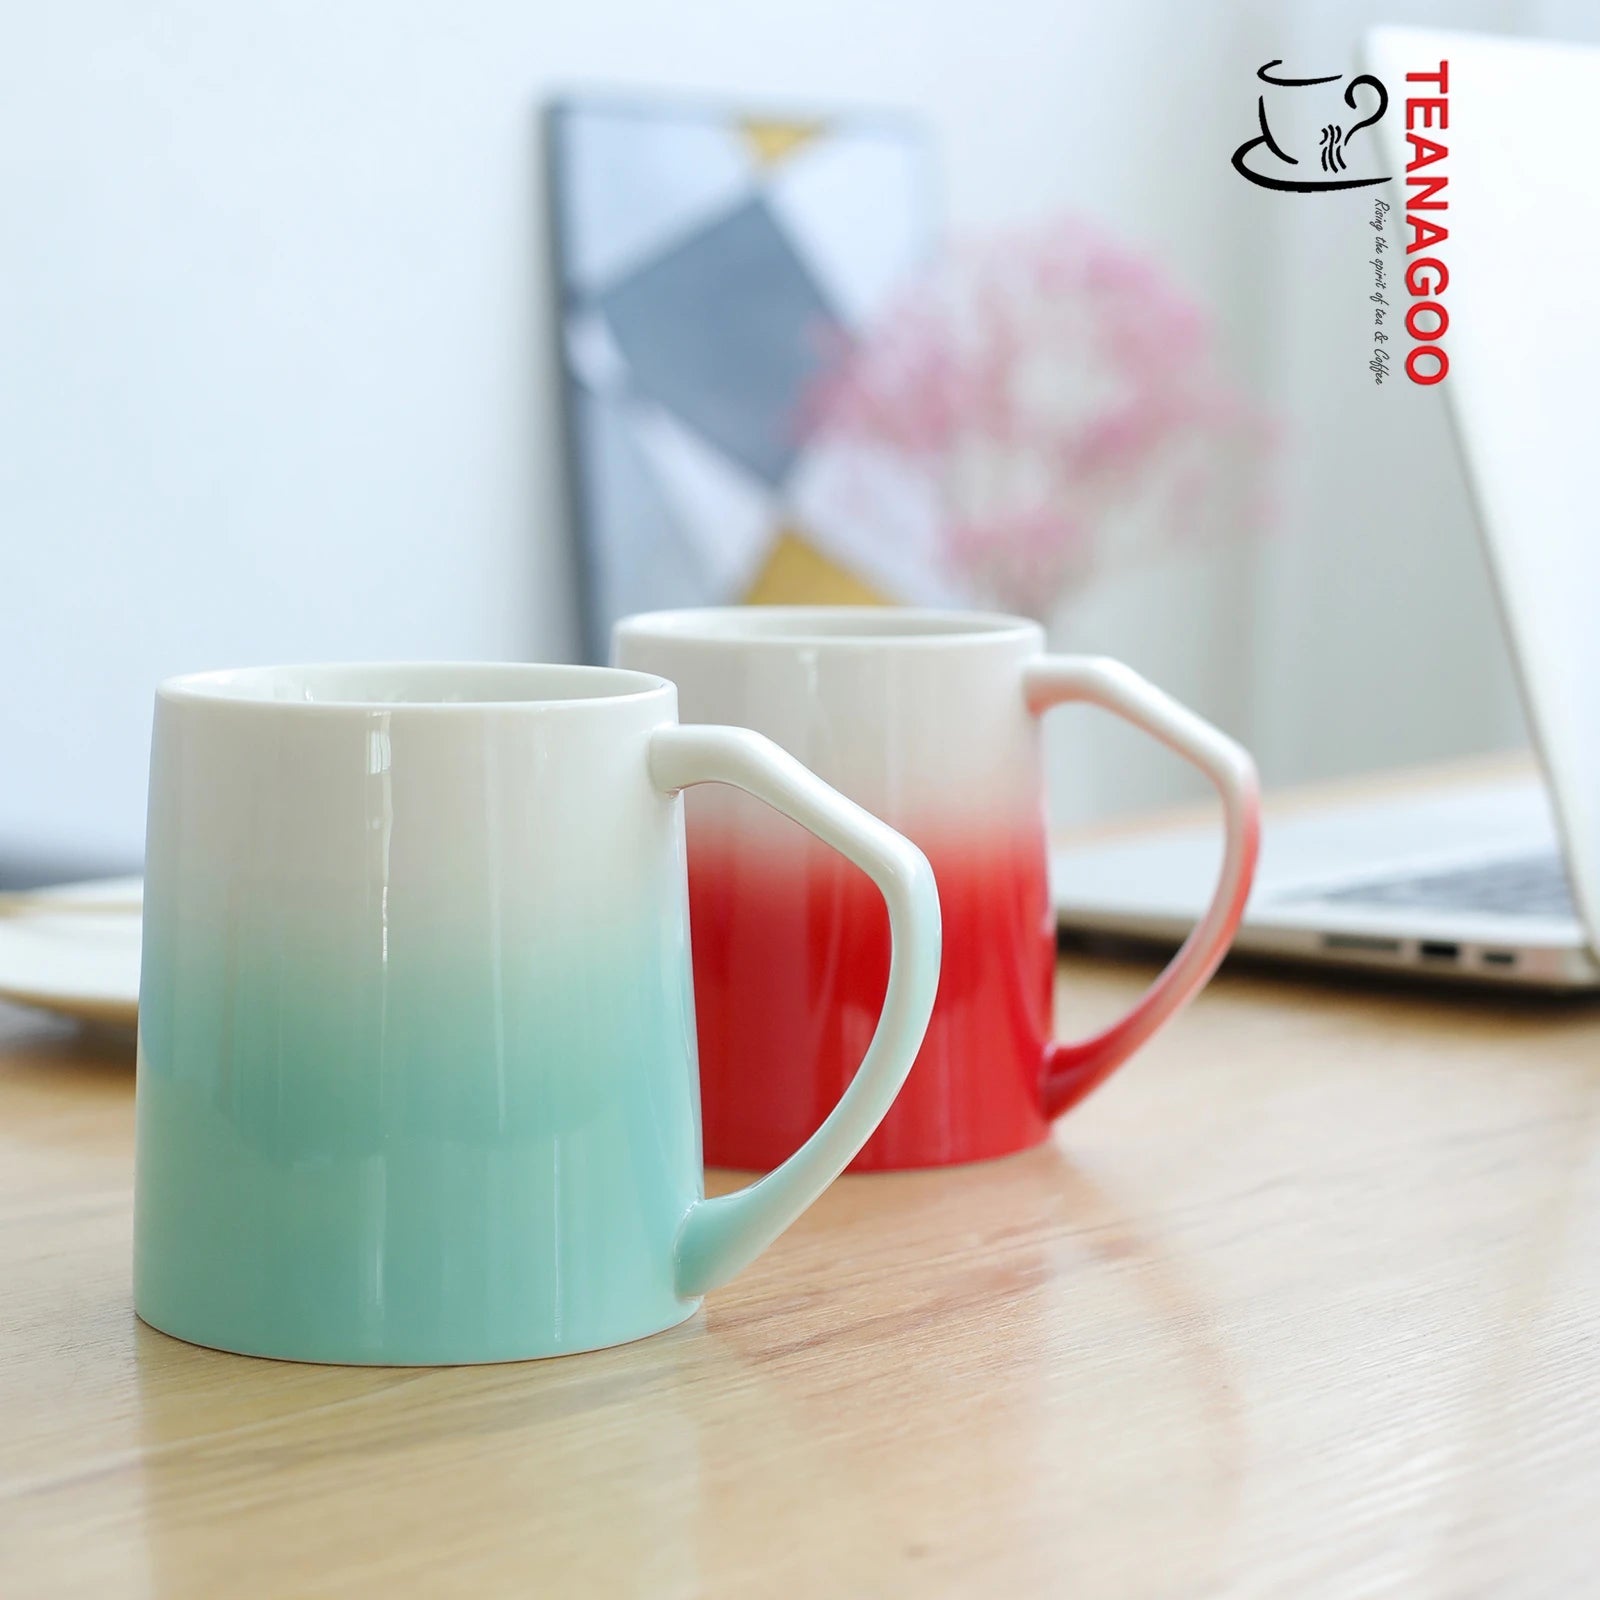 Coloch 6 Pack Ceramic Coffee Mug Set, 10 Oz Porcelain Coffee Cups Colorful  Inside Milk Mugs Restaura…See more Coloch 6 Pack Ceramic Coffee Mug Set, 10